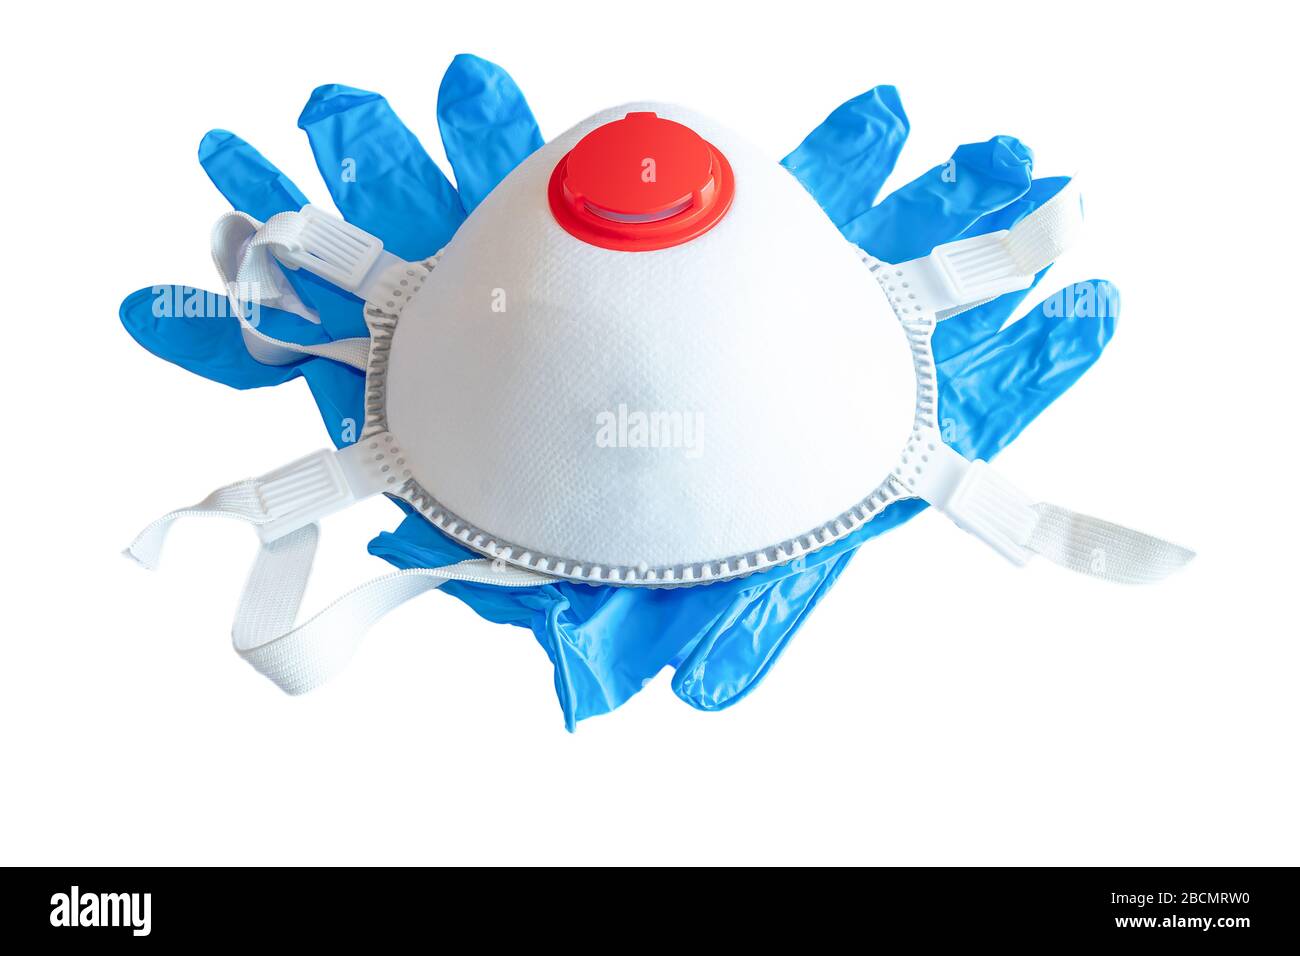 Masque anti-poussière fin FFP3, FFP2 avec valve respiratoire et gants en nitrile bleus isolés sur fond blanc Banque D'Images